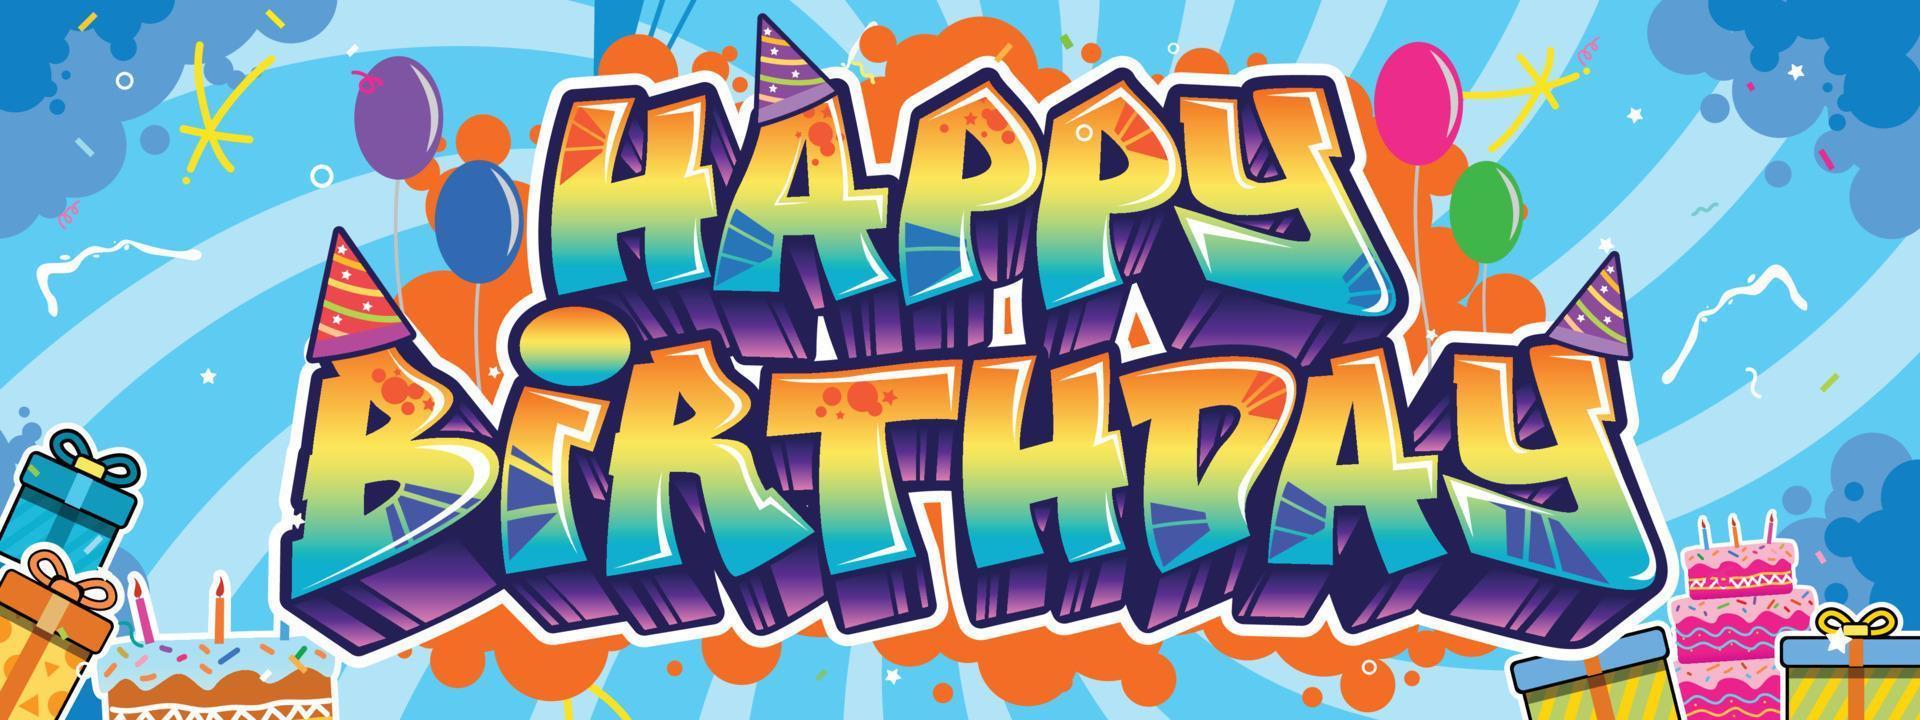 gelukkig verjaardag groet tekst in graffiti stijl. kleurrijk straat kunst thema illustratie, sociaal media ontwerp, groet, poster met levendig kleur voor muur kunst en achtergrond vector